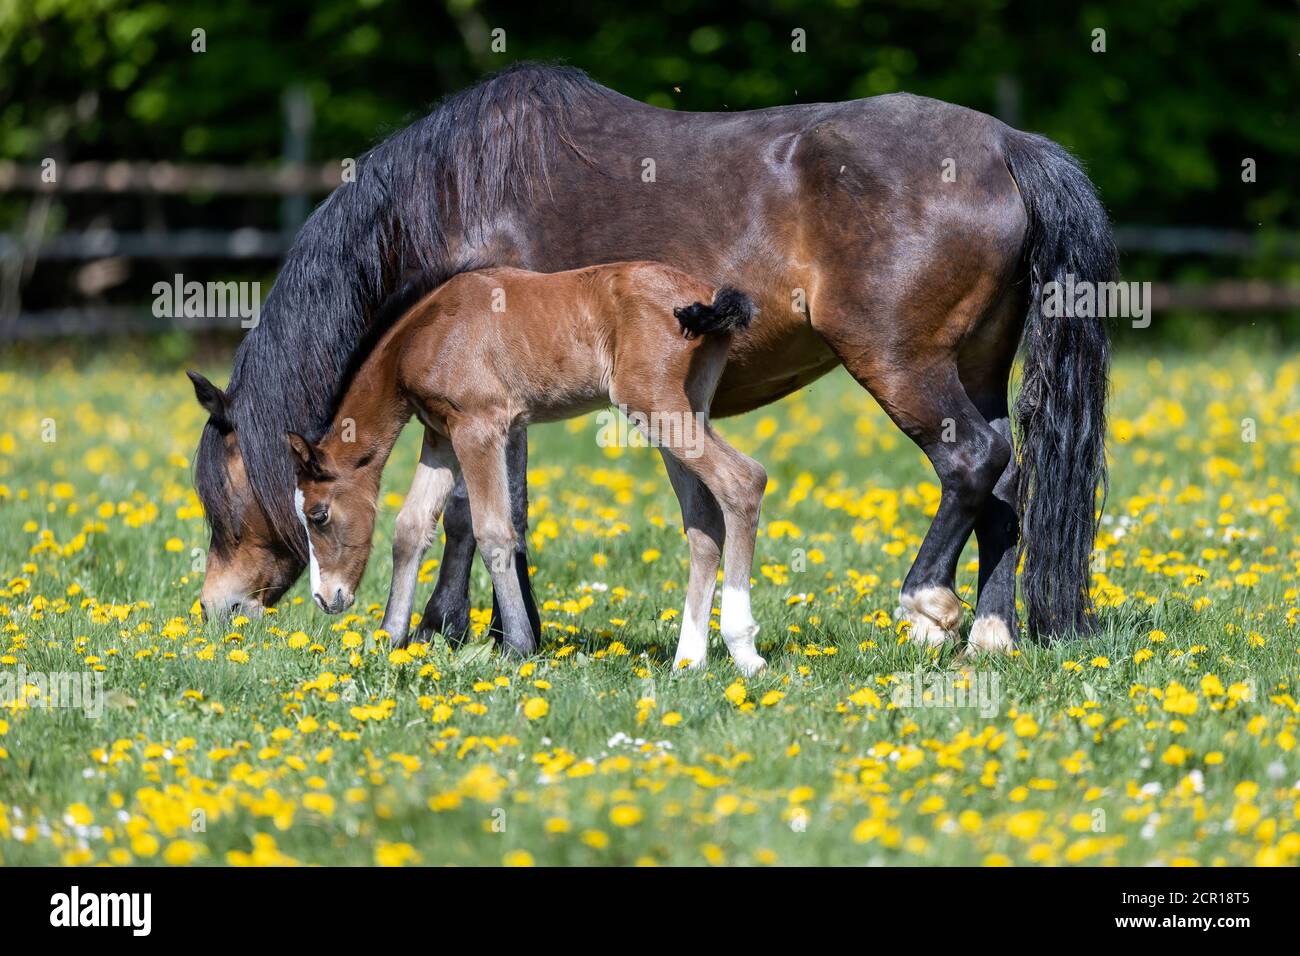 Horses, foals, Germany Stock Photo